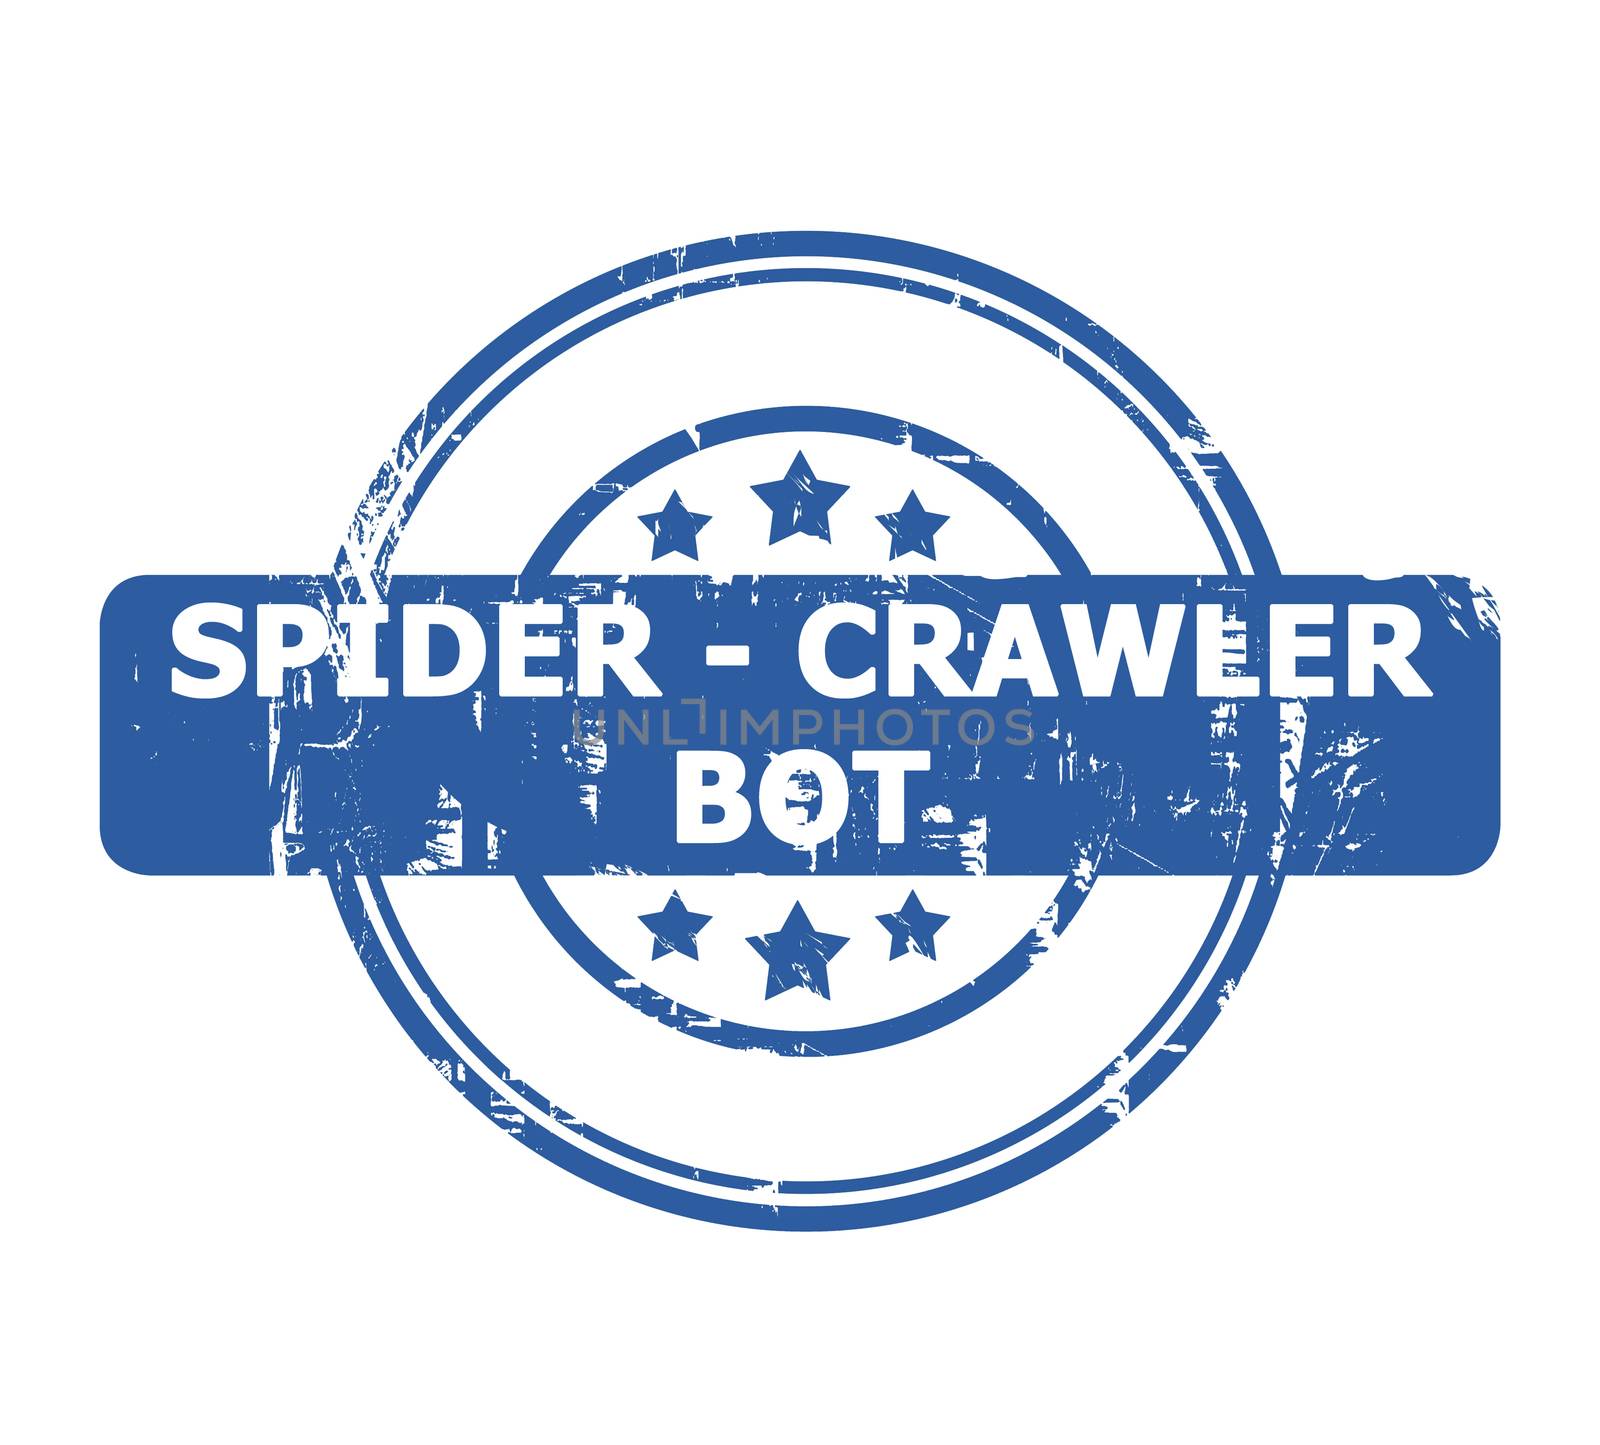 Spider Crawler Bot Stamp by speedfighter